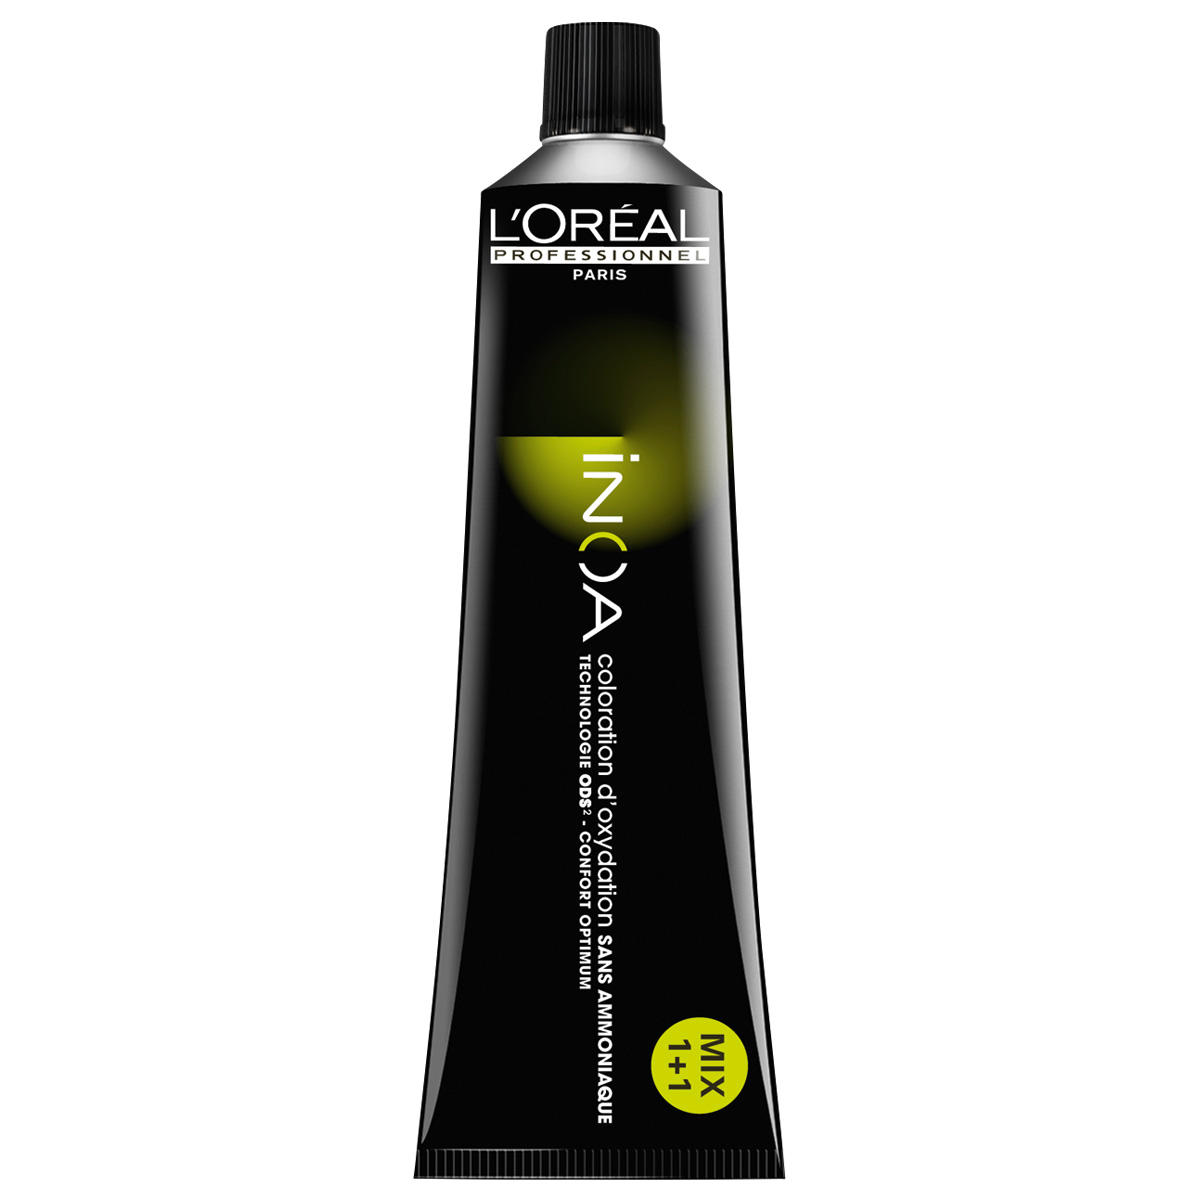 L'Oréal Professionnel Paris Coloration 5.5 Marrón claro caoba, tubo 60 ml